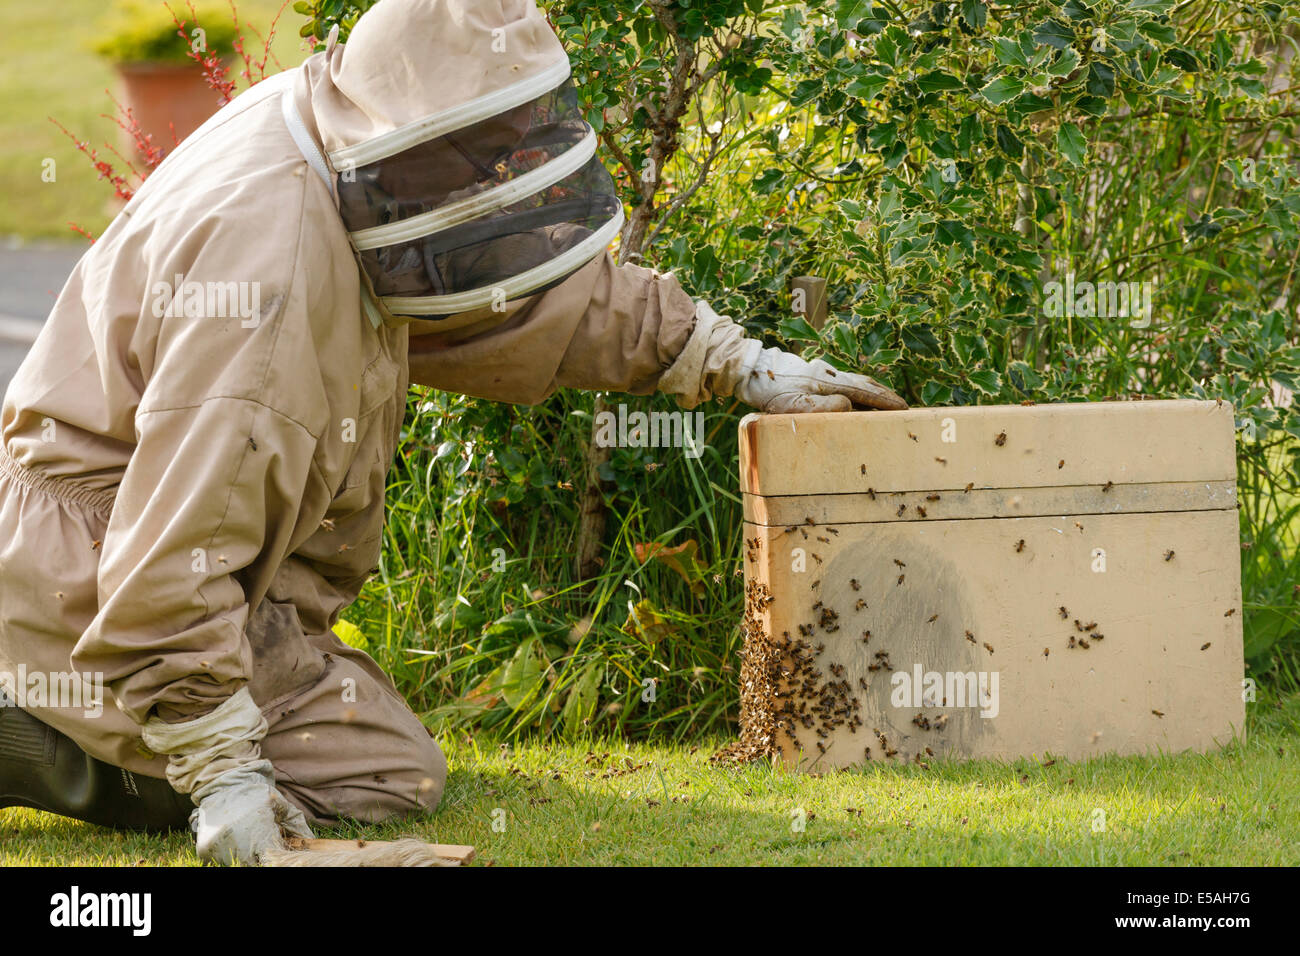 Apiculteur récupération d'un essaim d'abeilles sauvages d'un buisson dans un jardin, brossage des abeilles dans une boîte de collection Banque D'Images